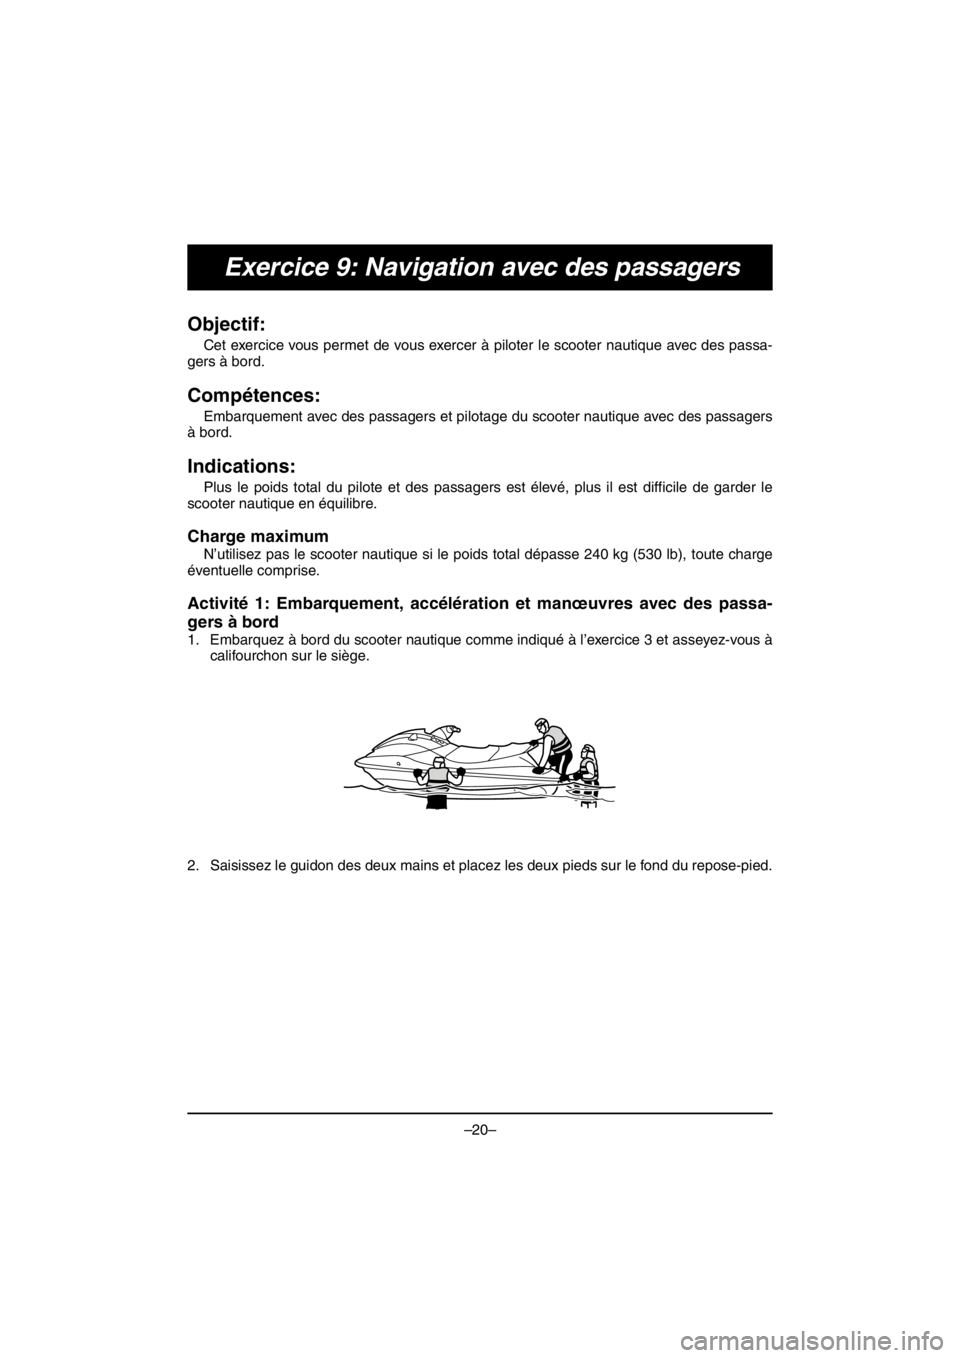 YAMAHA V1 2016 Service Manual –20–
Exercice 9: Navigation avec des passagers
Objectif: 
Cet exercice vous permet de vous exercer à piloter le scooter nautique avec des passa-
gers à bord.
Compétences: 
Embarquement avec des